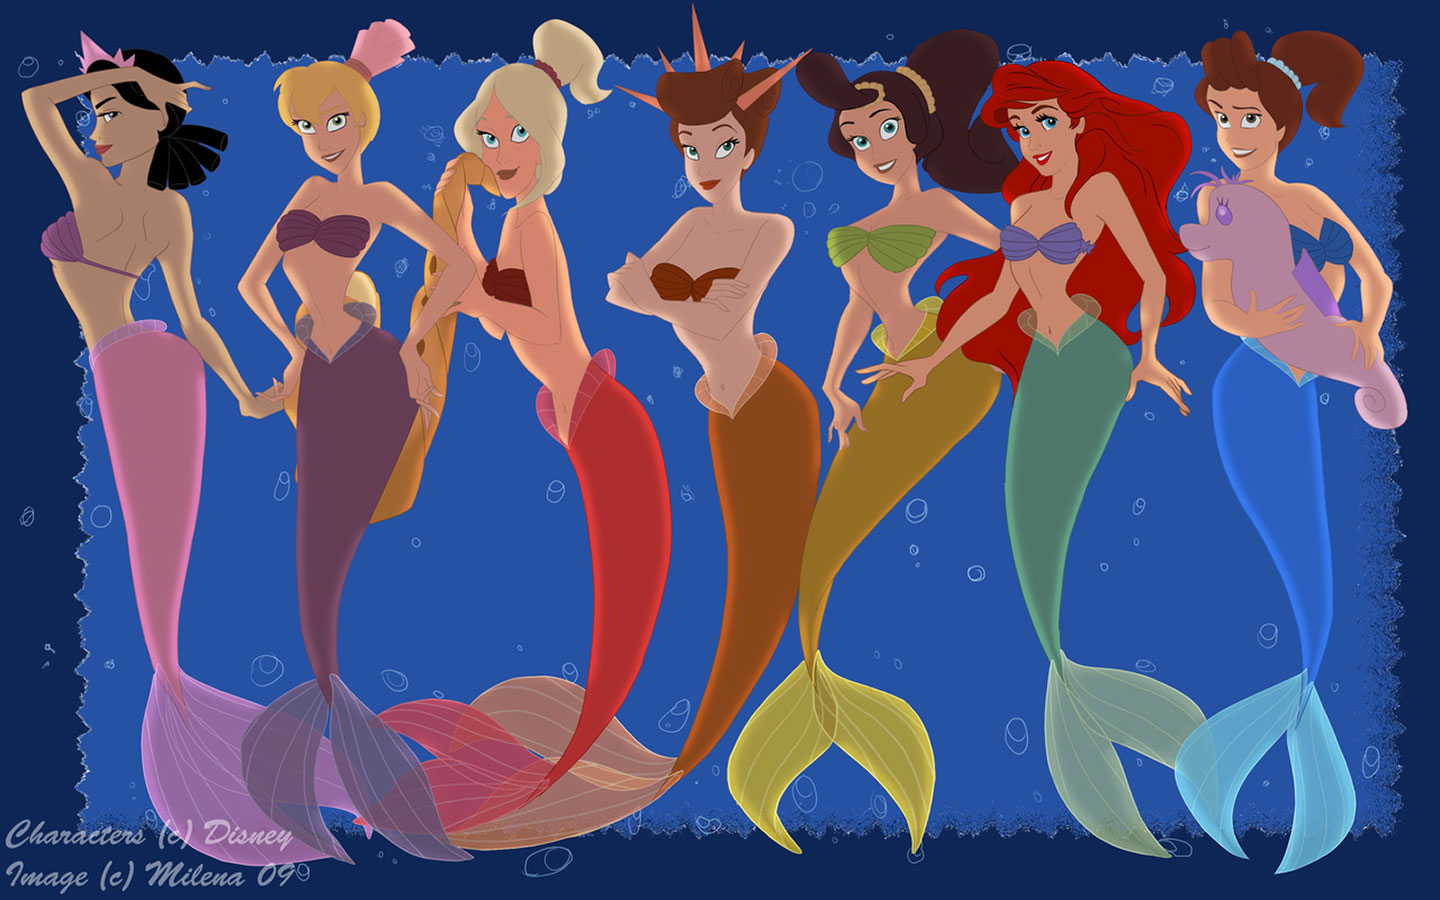 movie, the little mermaid: ariel's beginning, adella (the little mermaid), alana (the little mermaid), andrina (the little mermaid), aquata (the little mermaid), ariel (the little mermaid), arista (the little mermaid), attina (the little mermaid), mermaid, the little mermaid